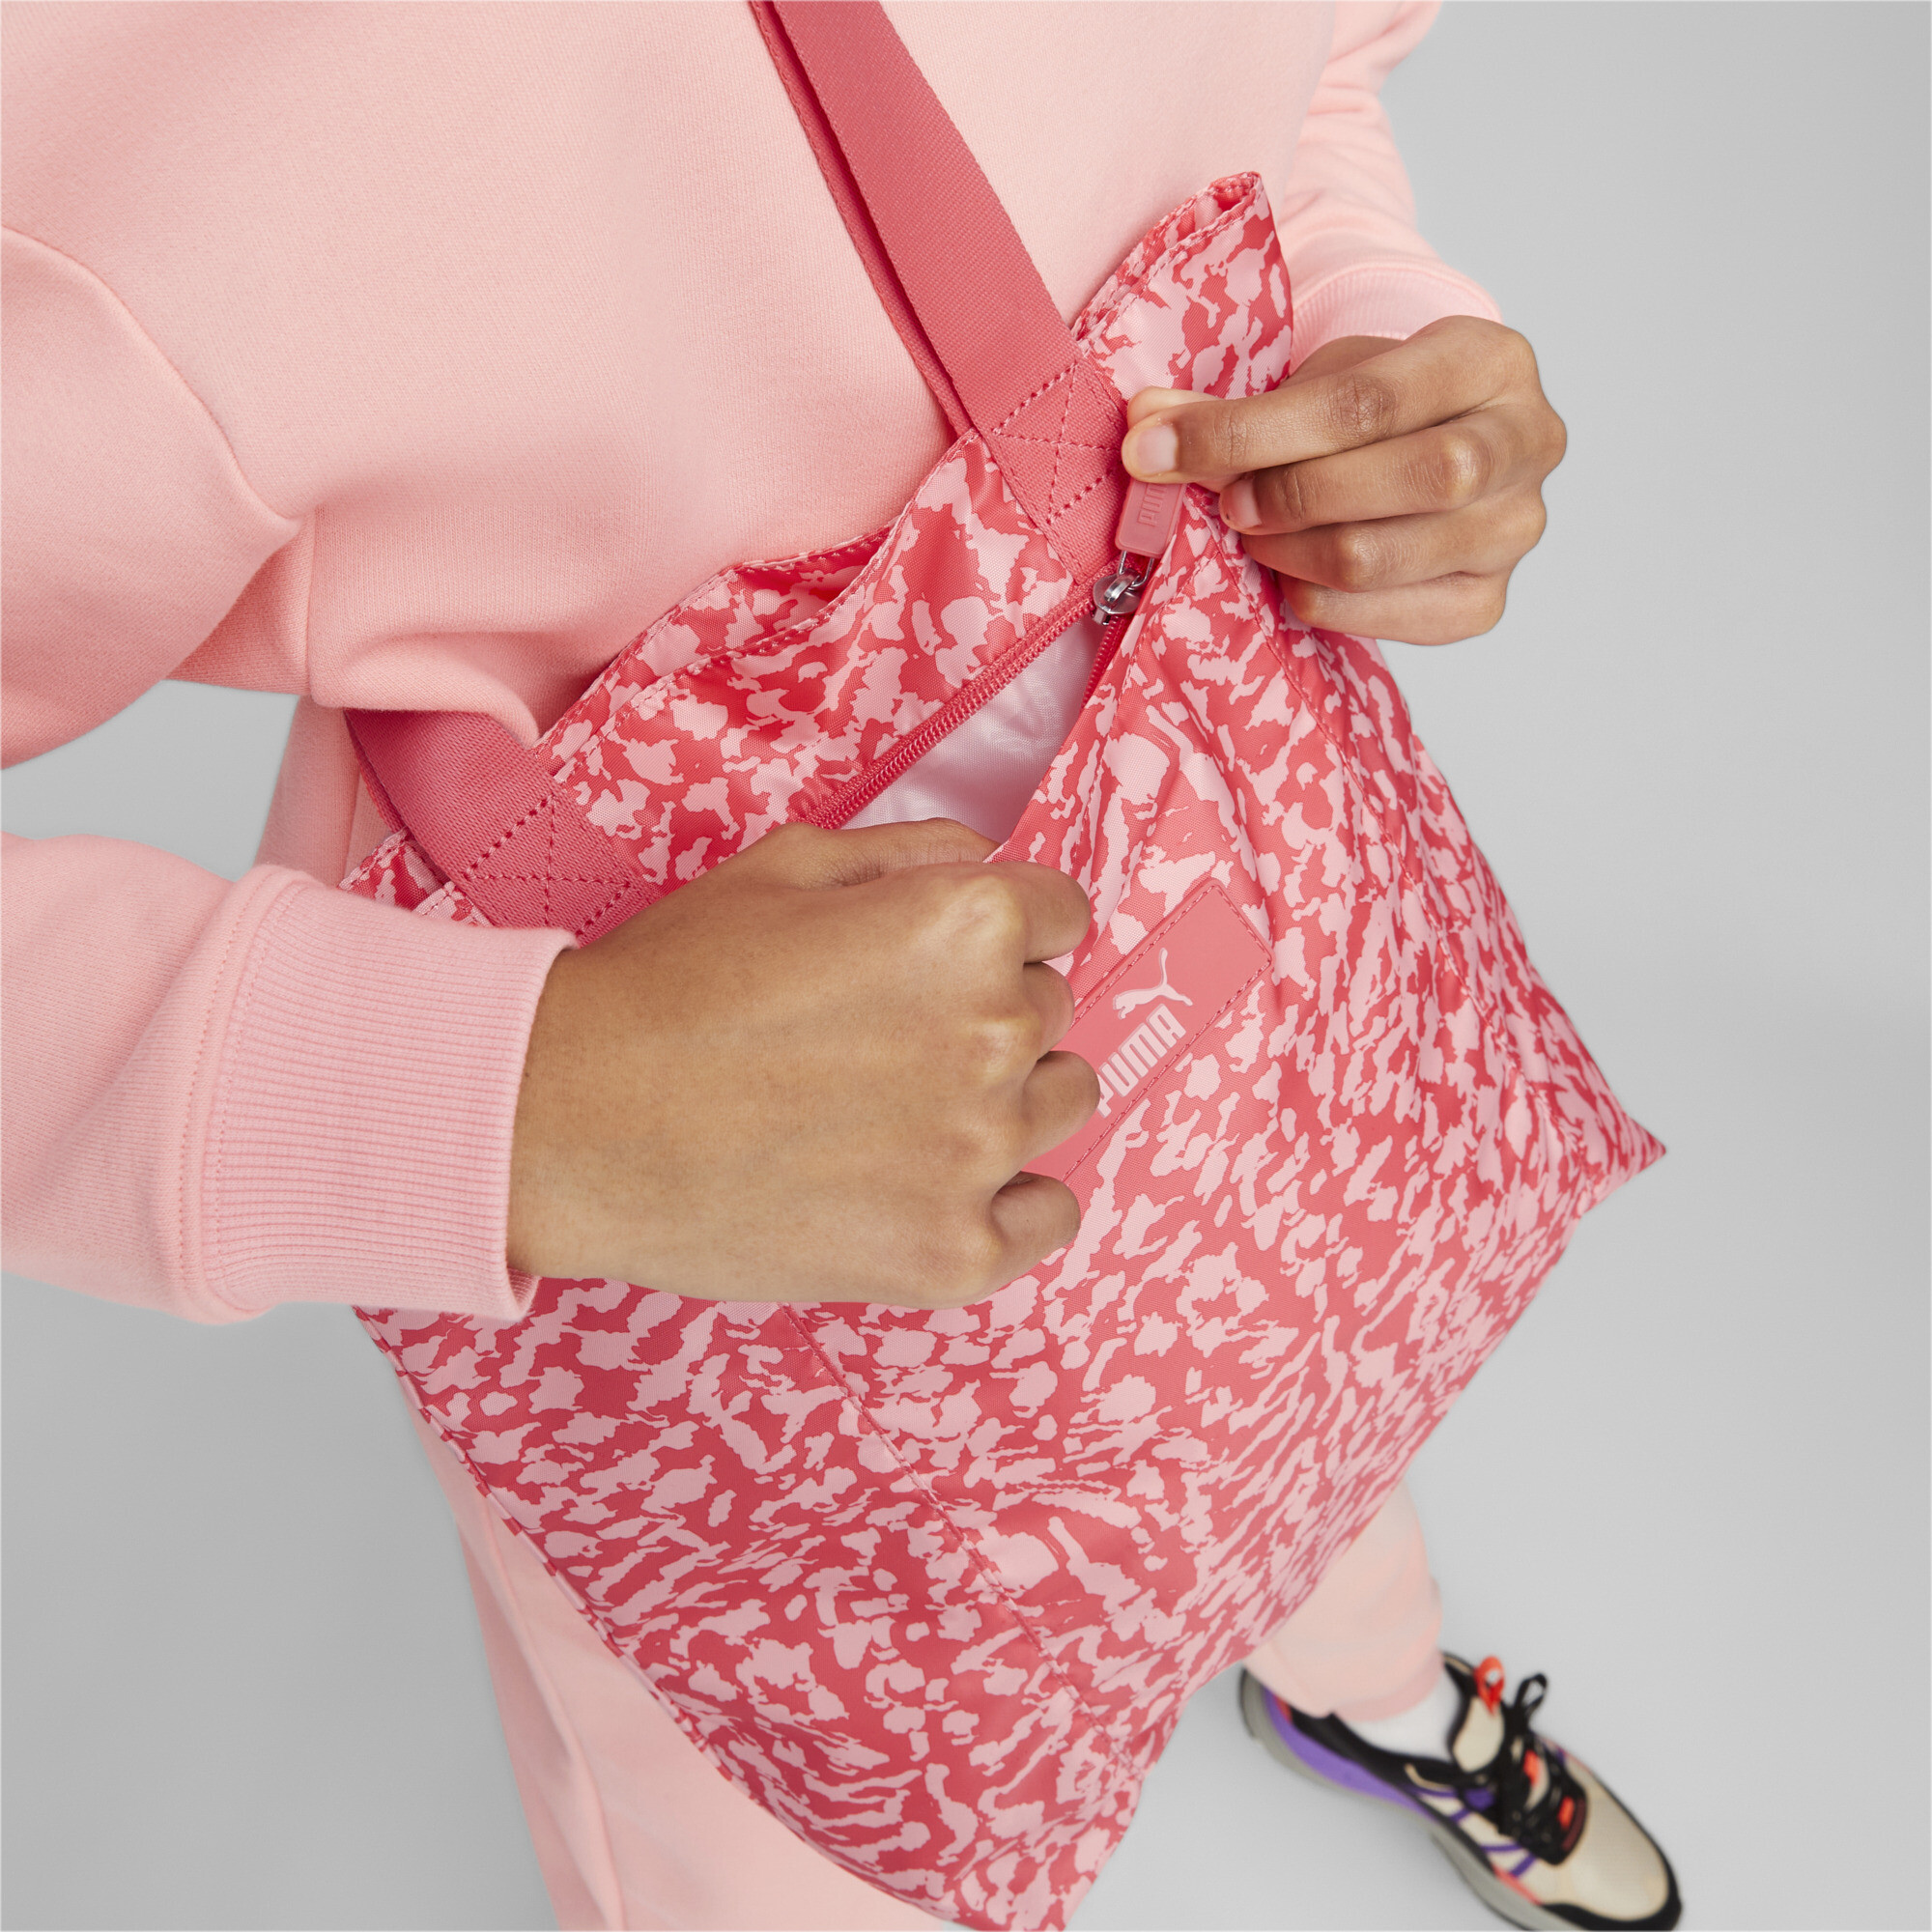 Women's Puma Core Pop Shopper, Pink, Accessories